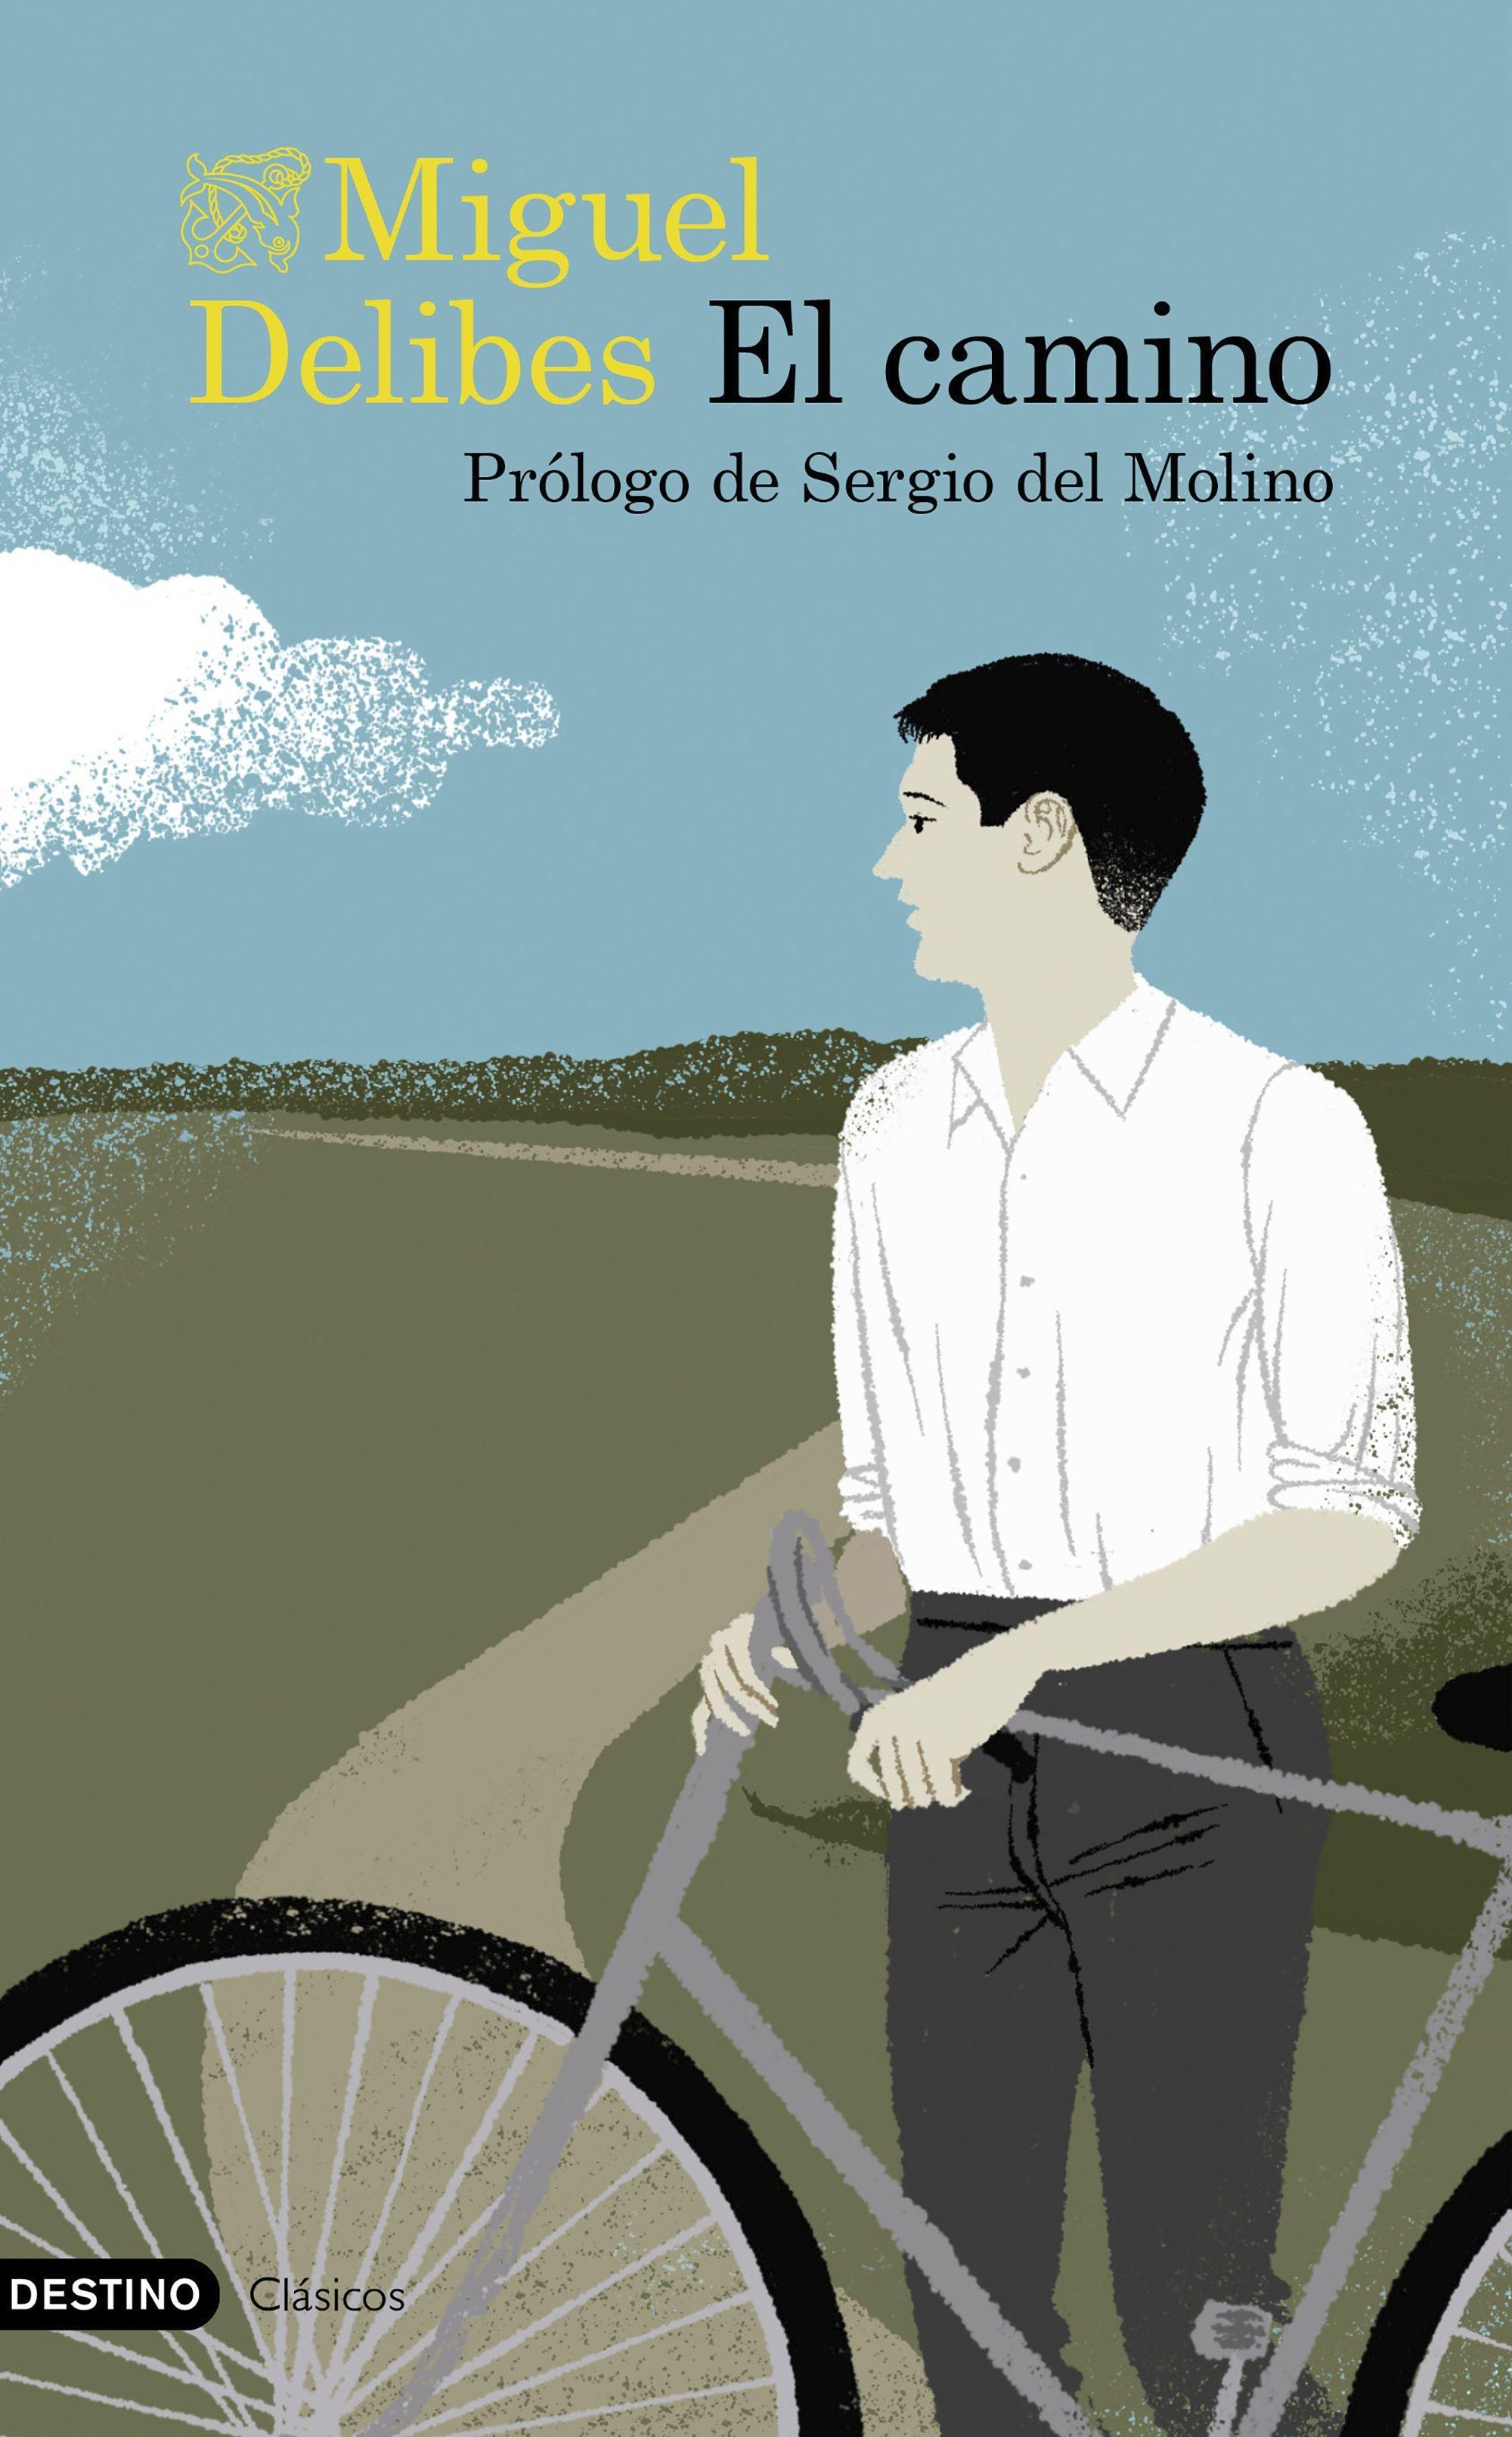 El Camino "Prólogo de Sergio del Molino"